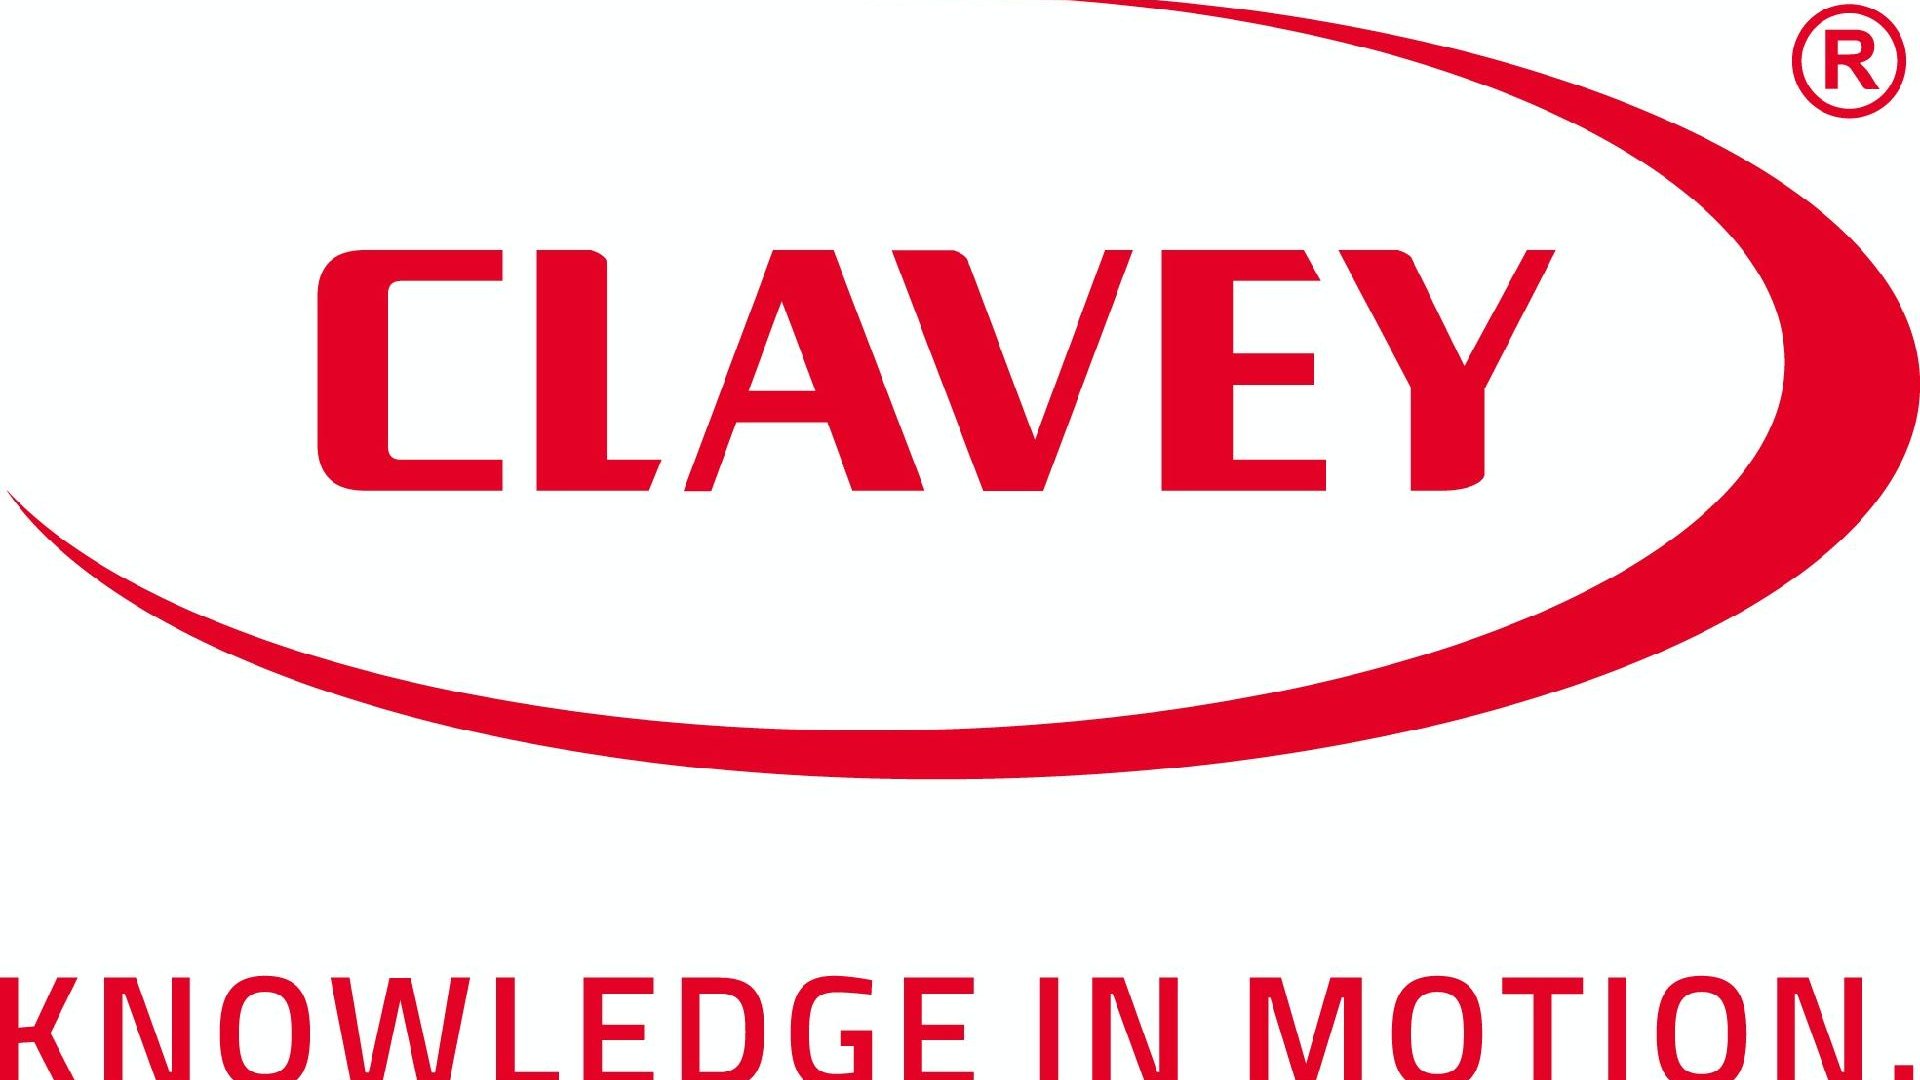 W akcji wzięło udział 8 firm, między innymi Clavey